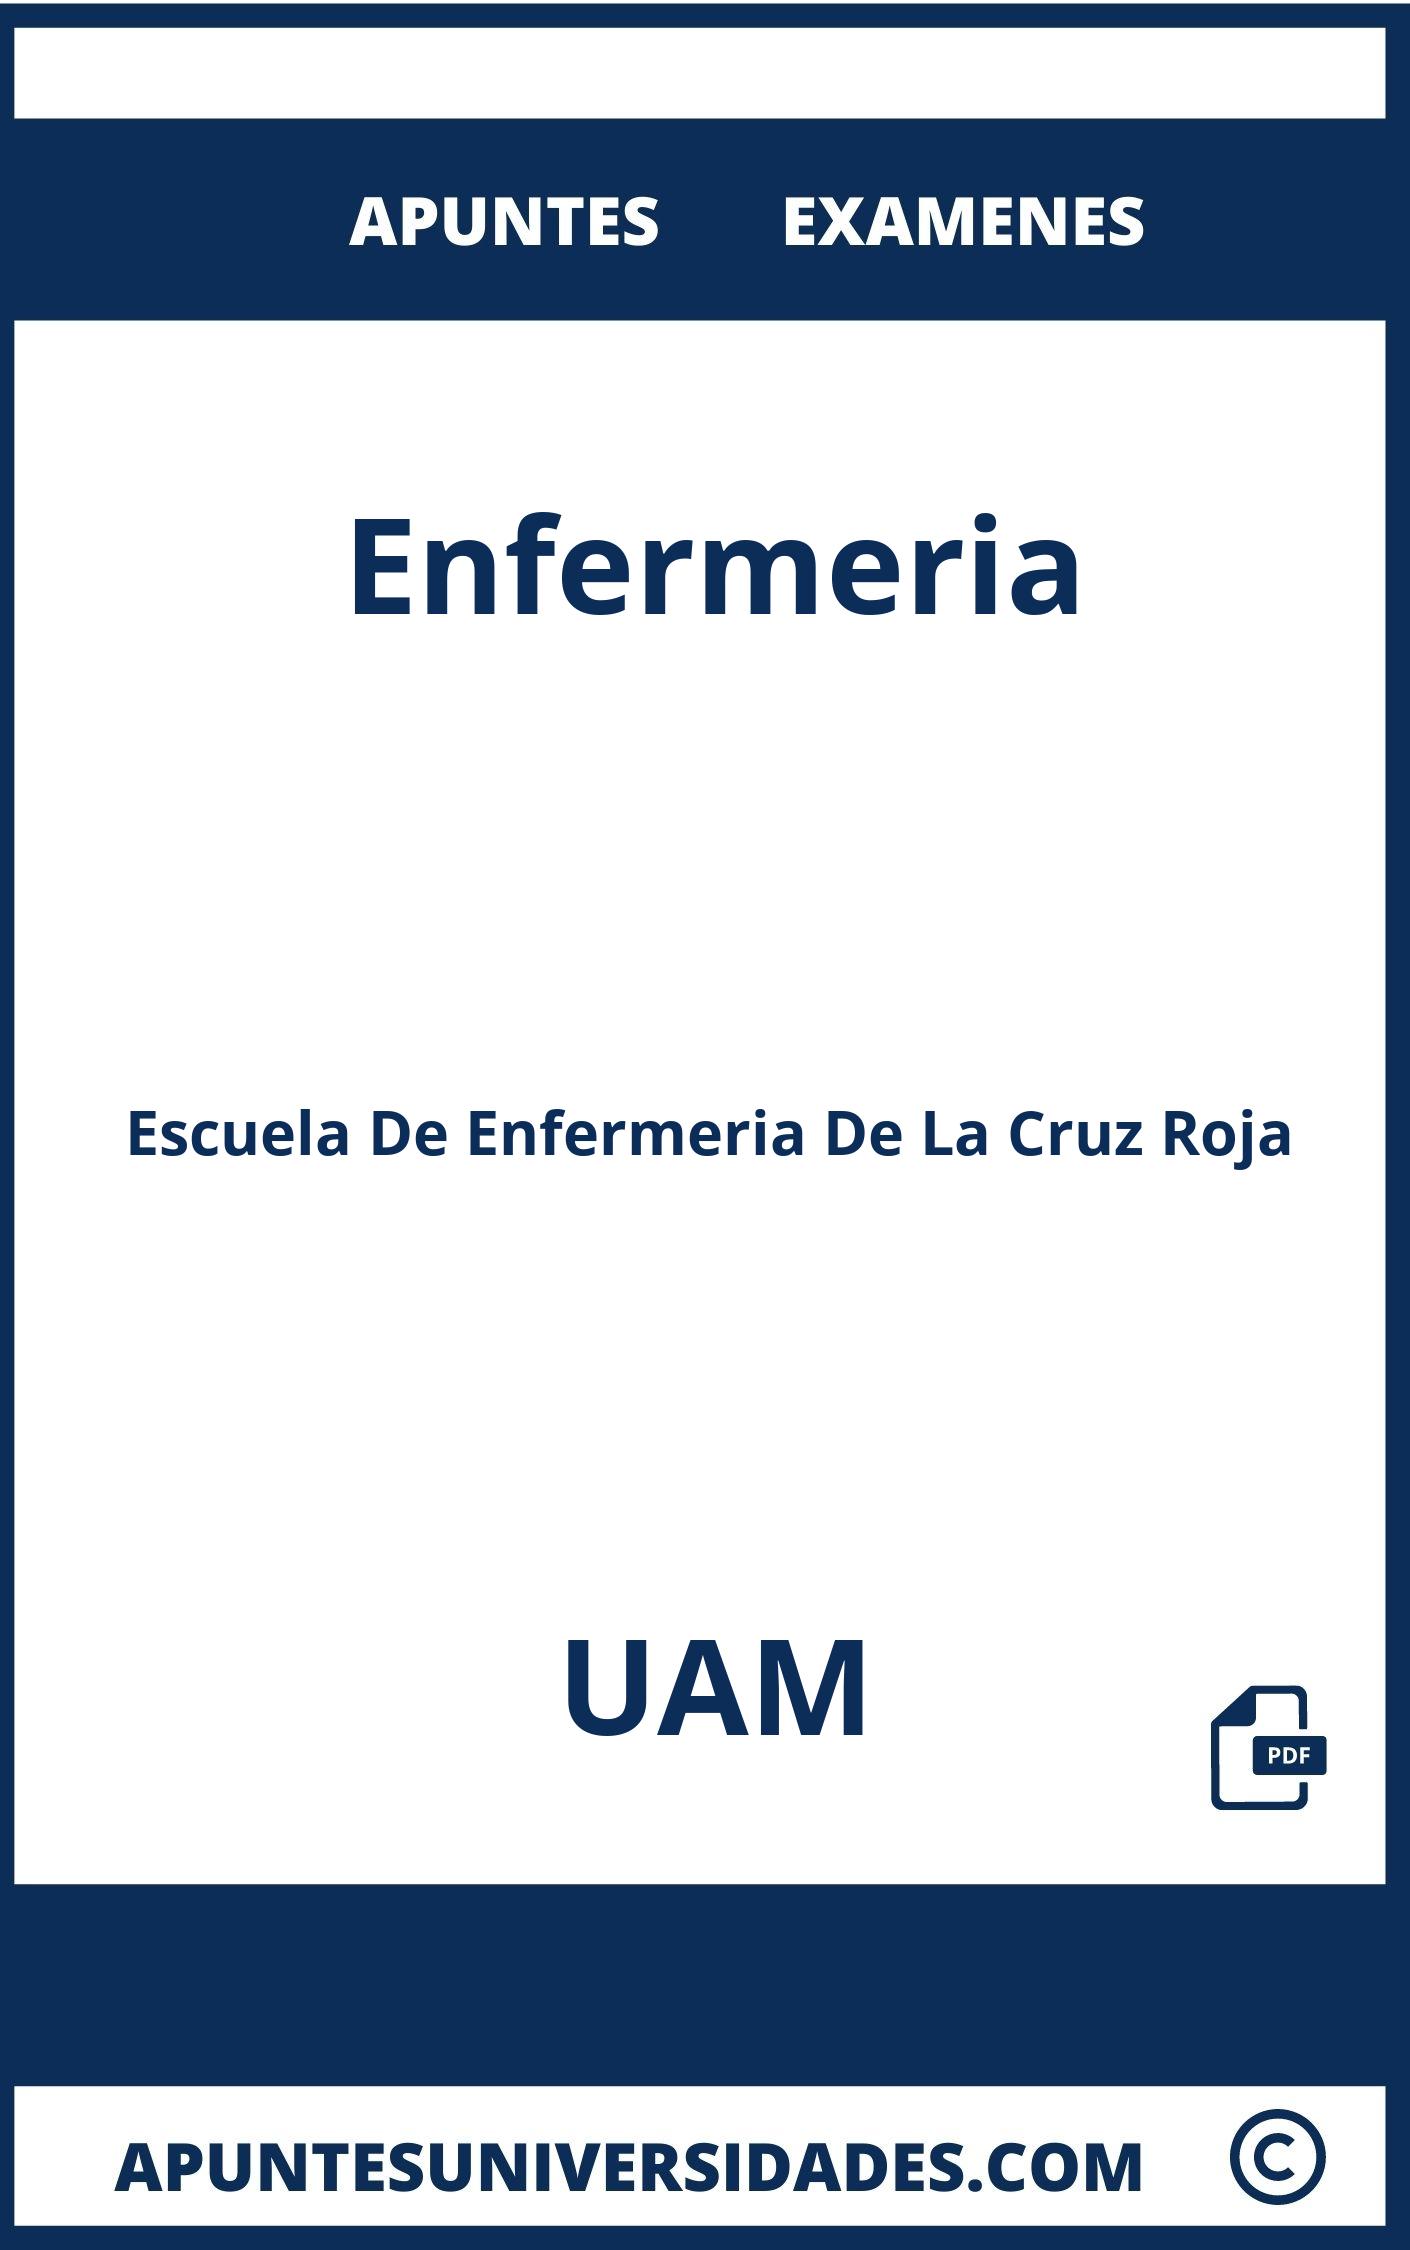 Apuntes y Examenes de Enfermeria UAM